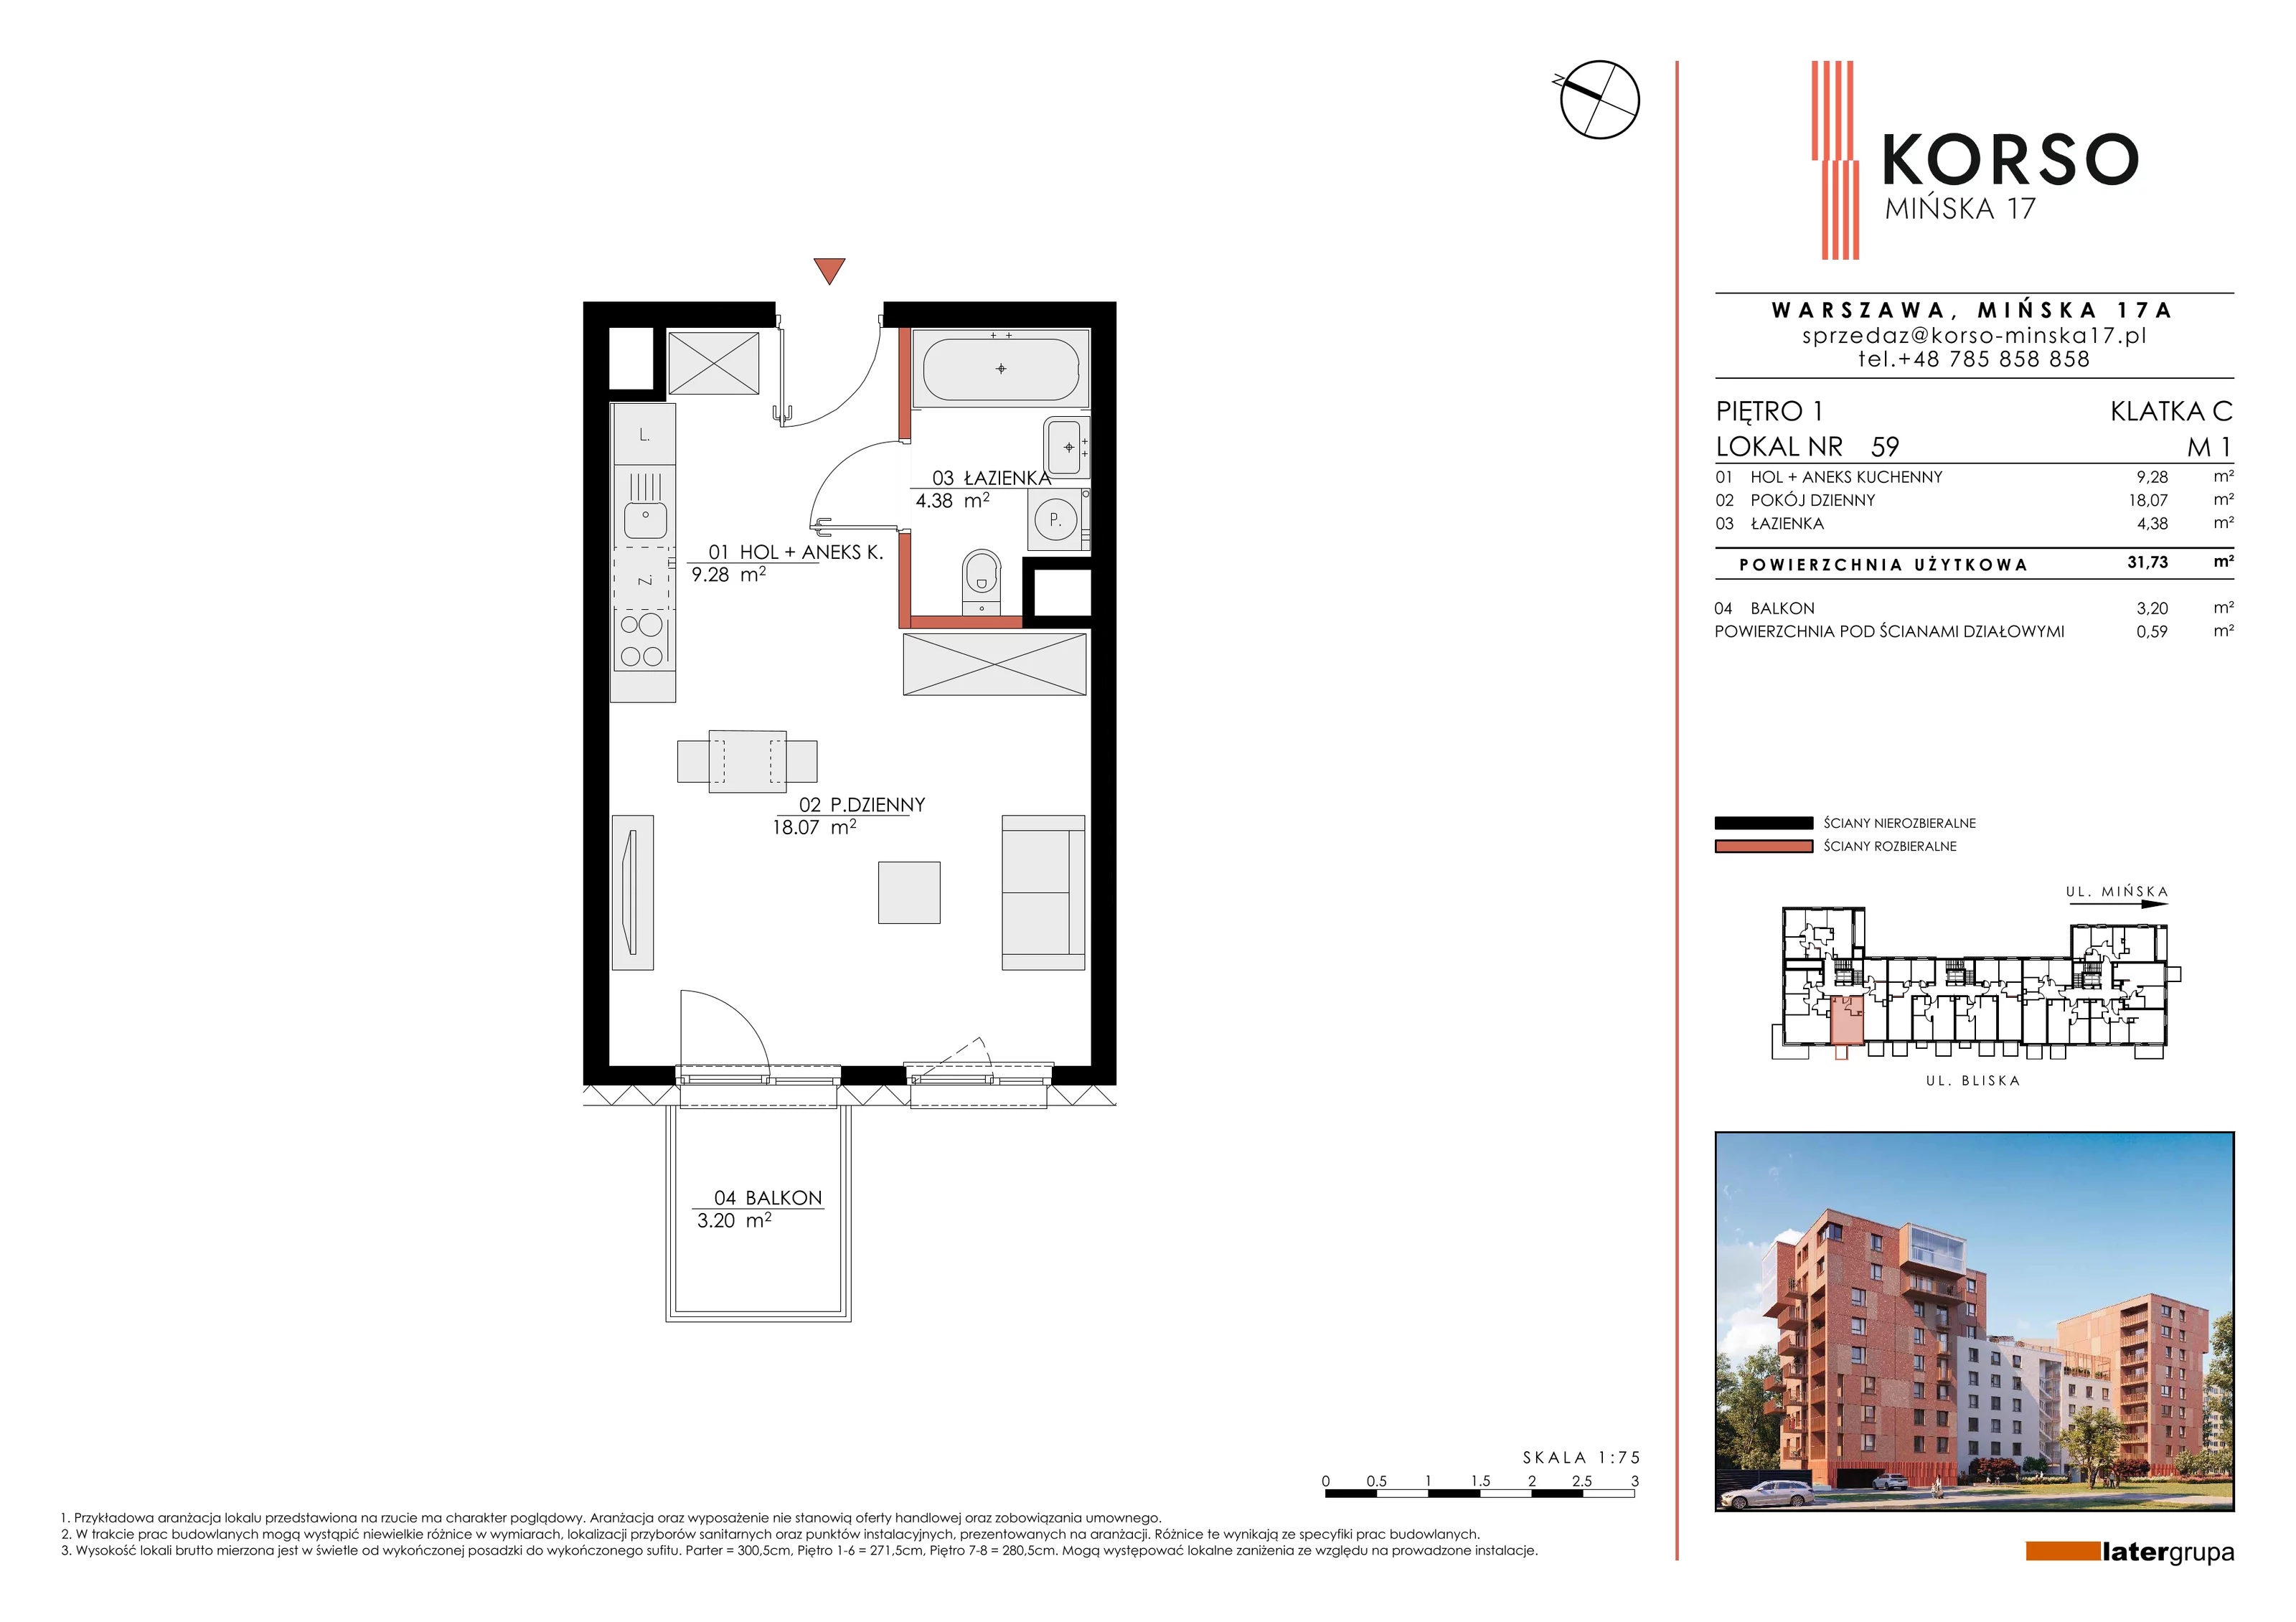 Mieszkanie 31,73 m², piętro 1, oferta nr 59, KORSO Mińska 17, Warszawa, Praga Południe, Kamionek, ul. Mińska 17